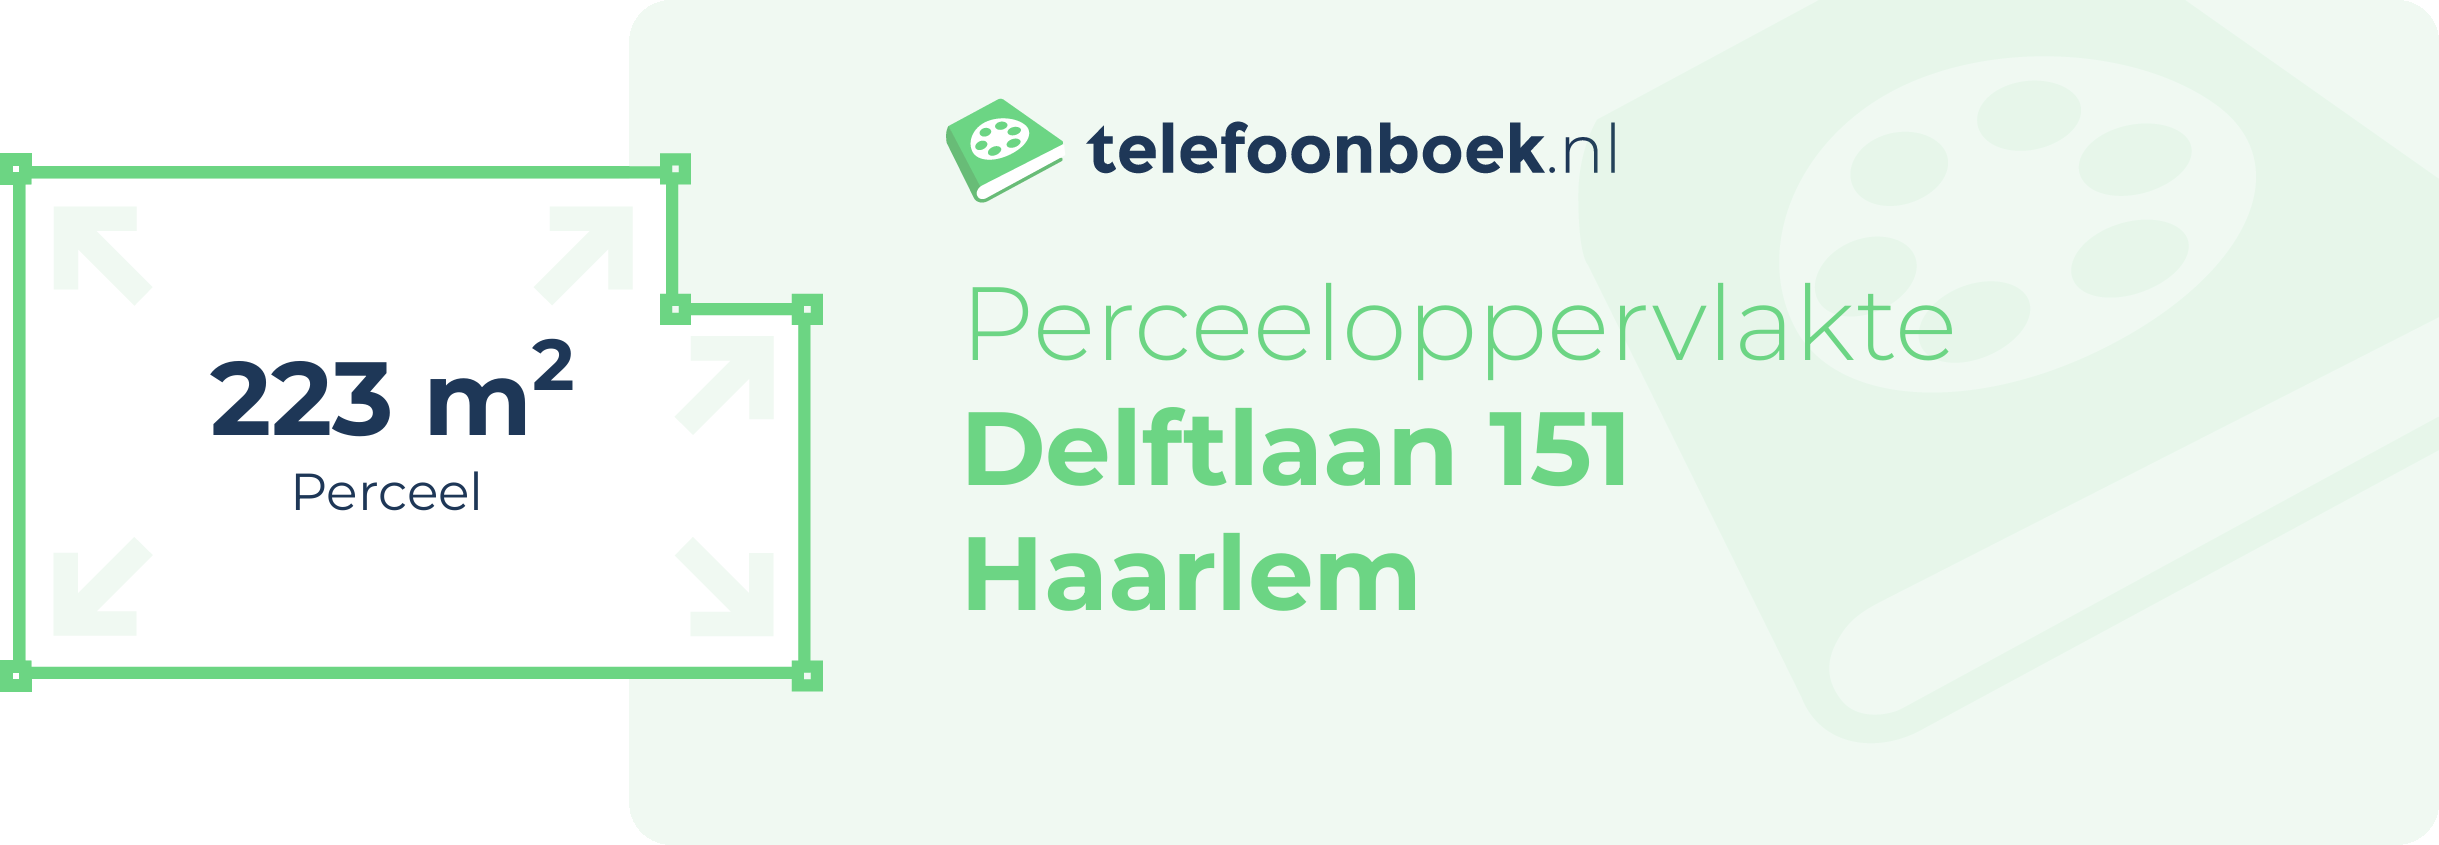 Perceeloppervlakte Delftlaan 151 Haarlem